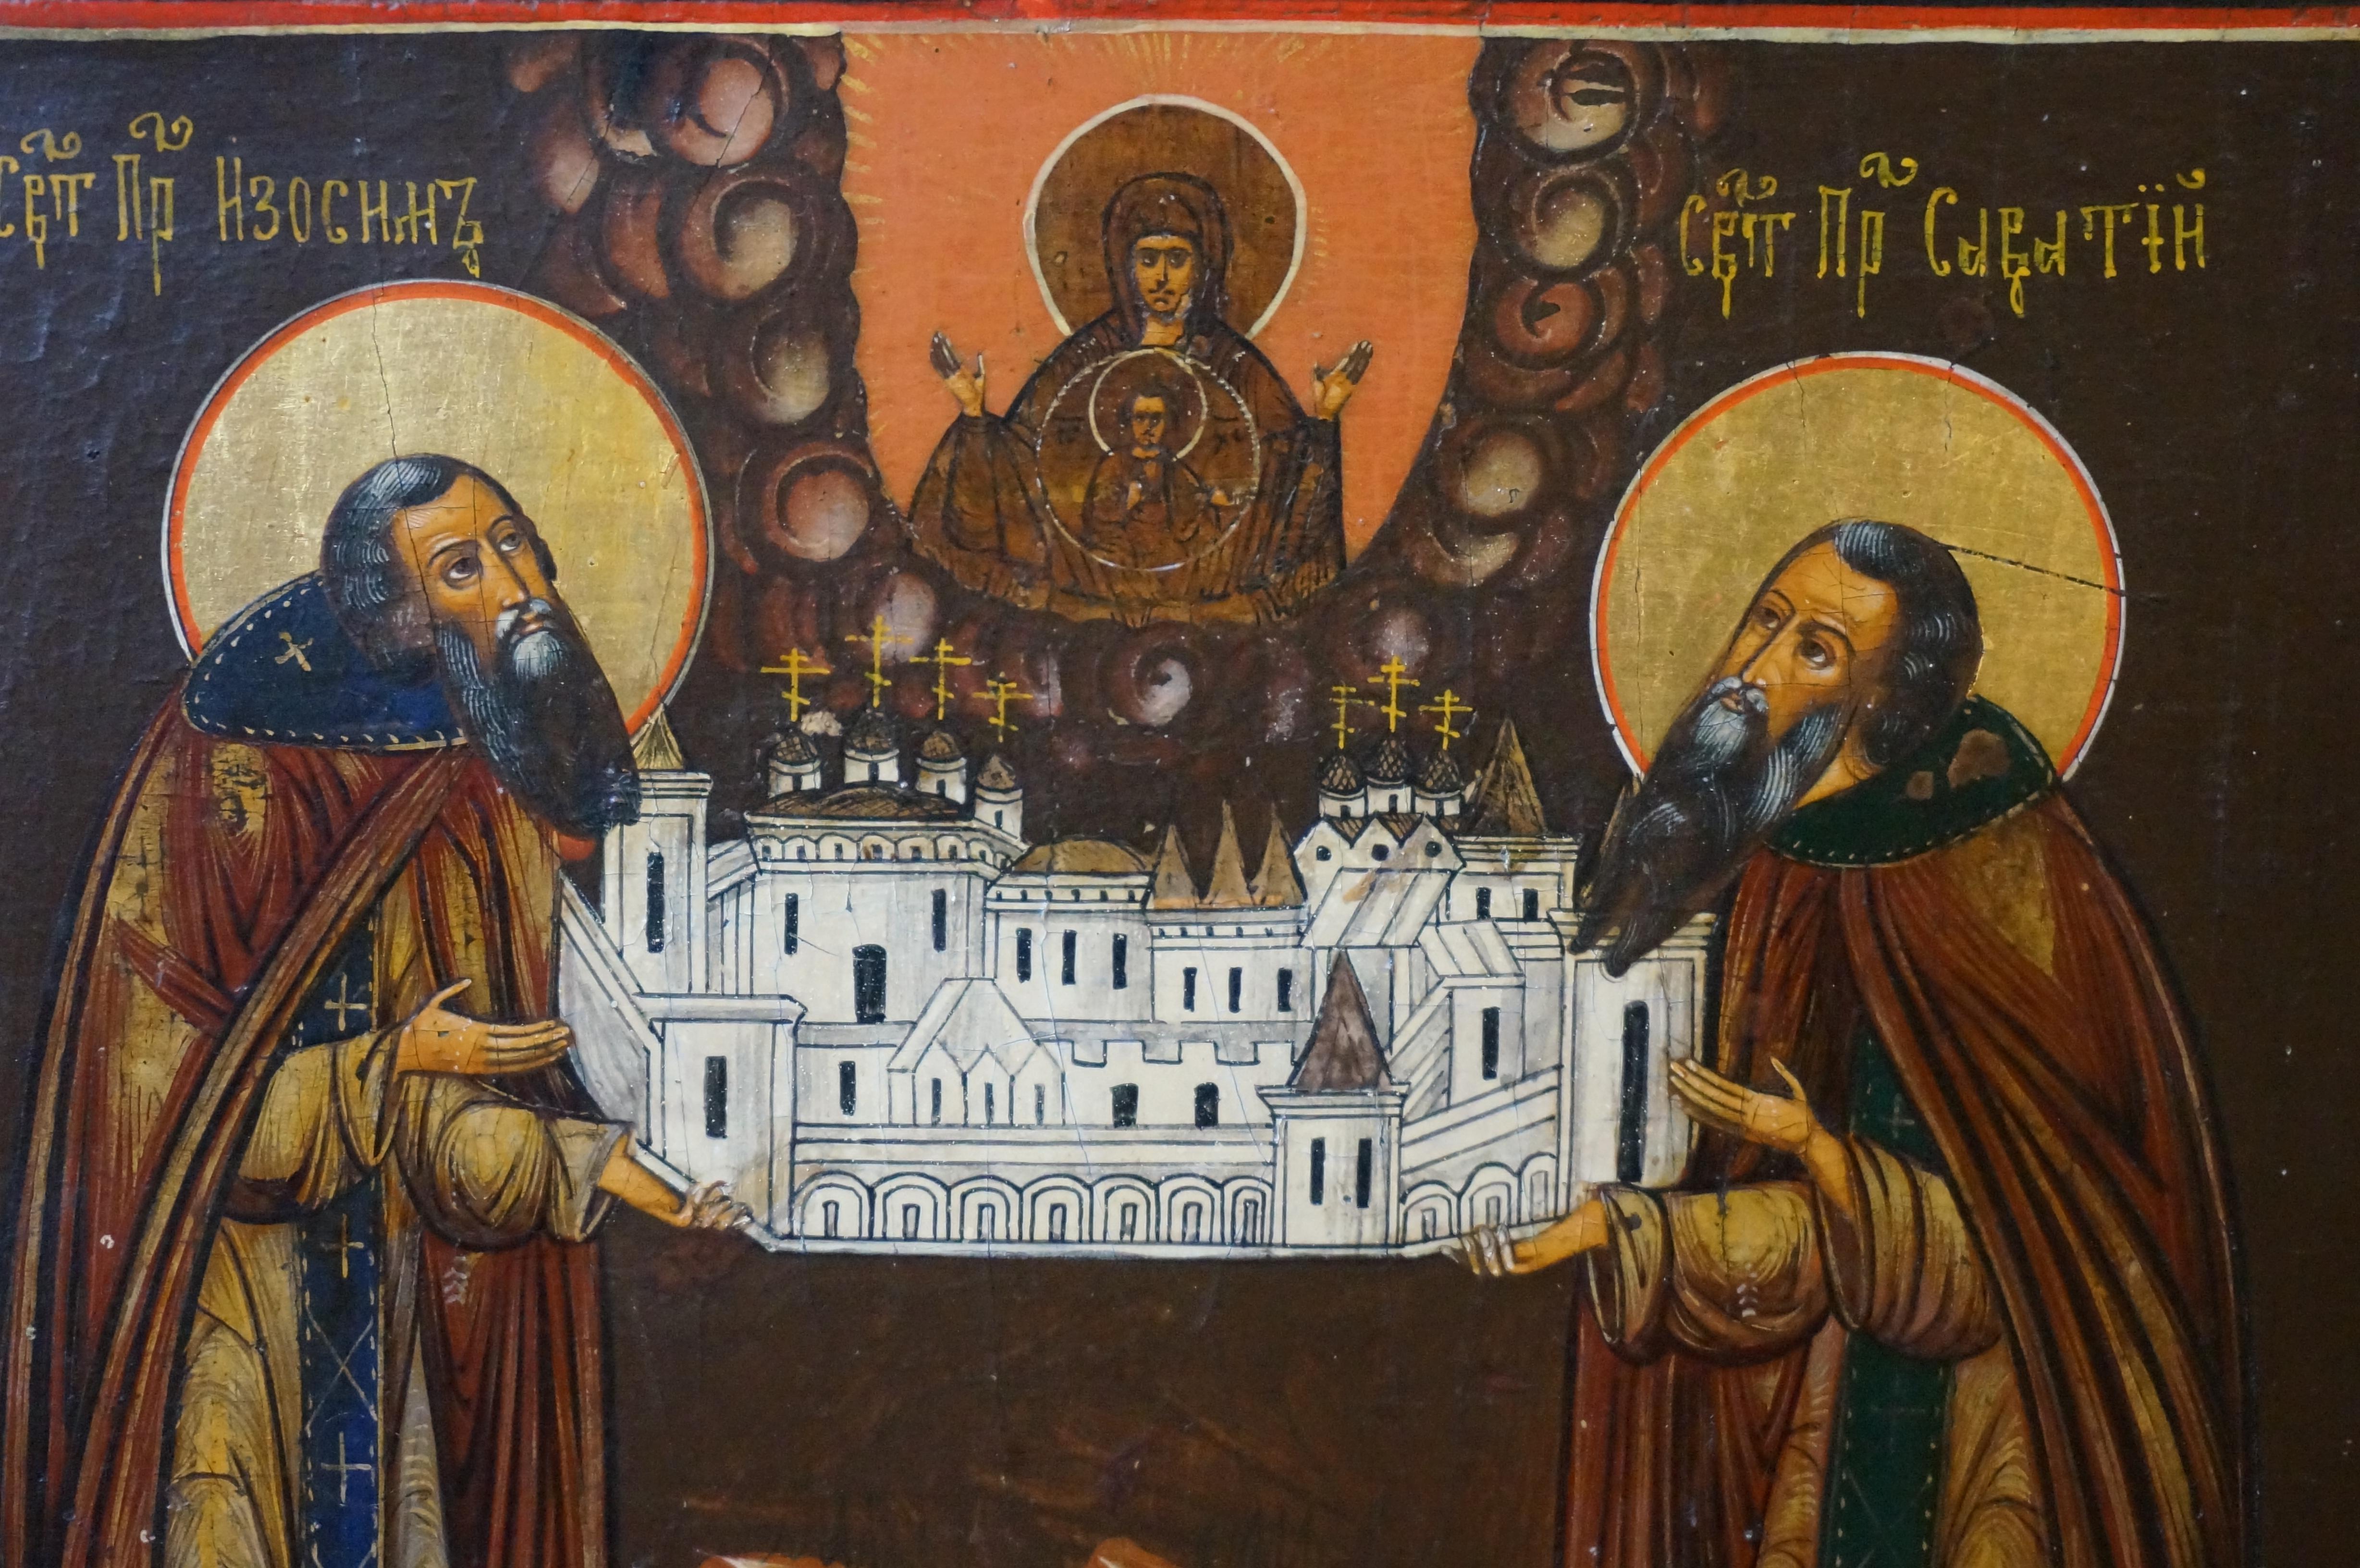 Zosima und Swataj, Gründer des Solowetski-Klosters, halten ein Modell ihres Klosters in den Händen, Ikone der Altgläubigen, zweite Hälfte 19. Jahrhundert. 

Abmessungen: 30 x 35 cm.